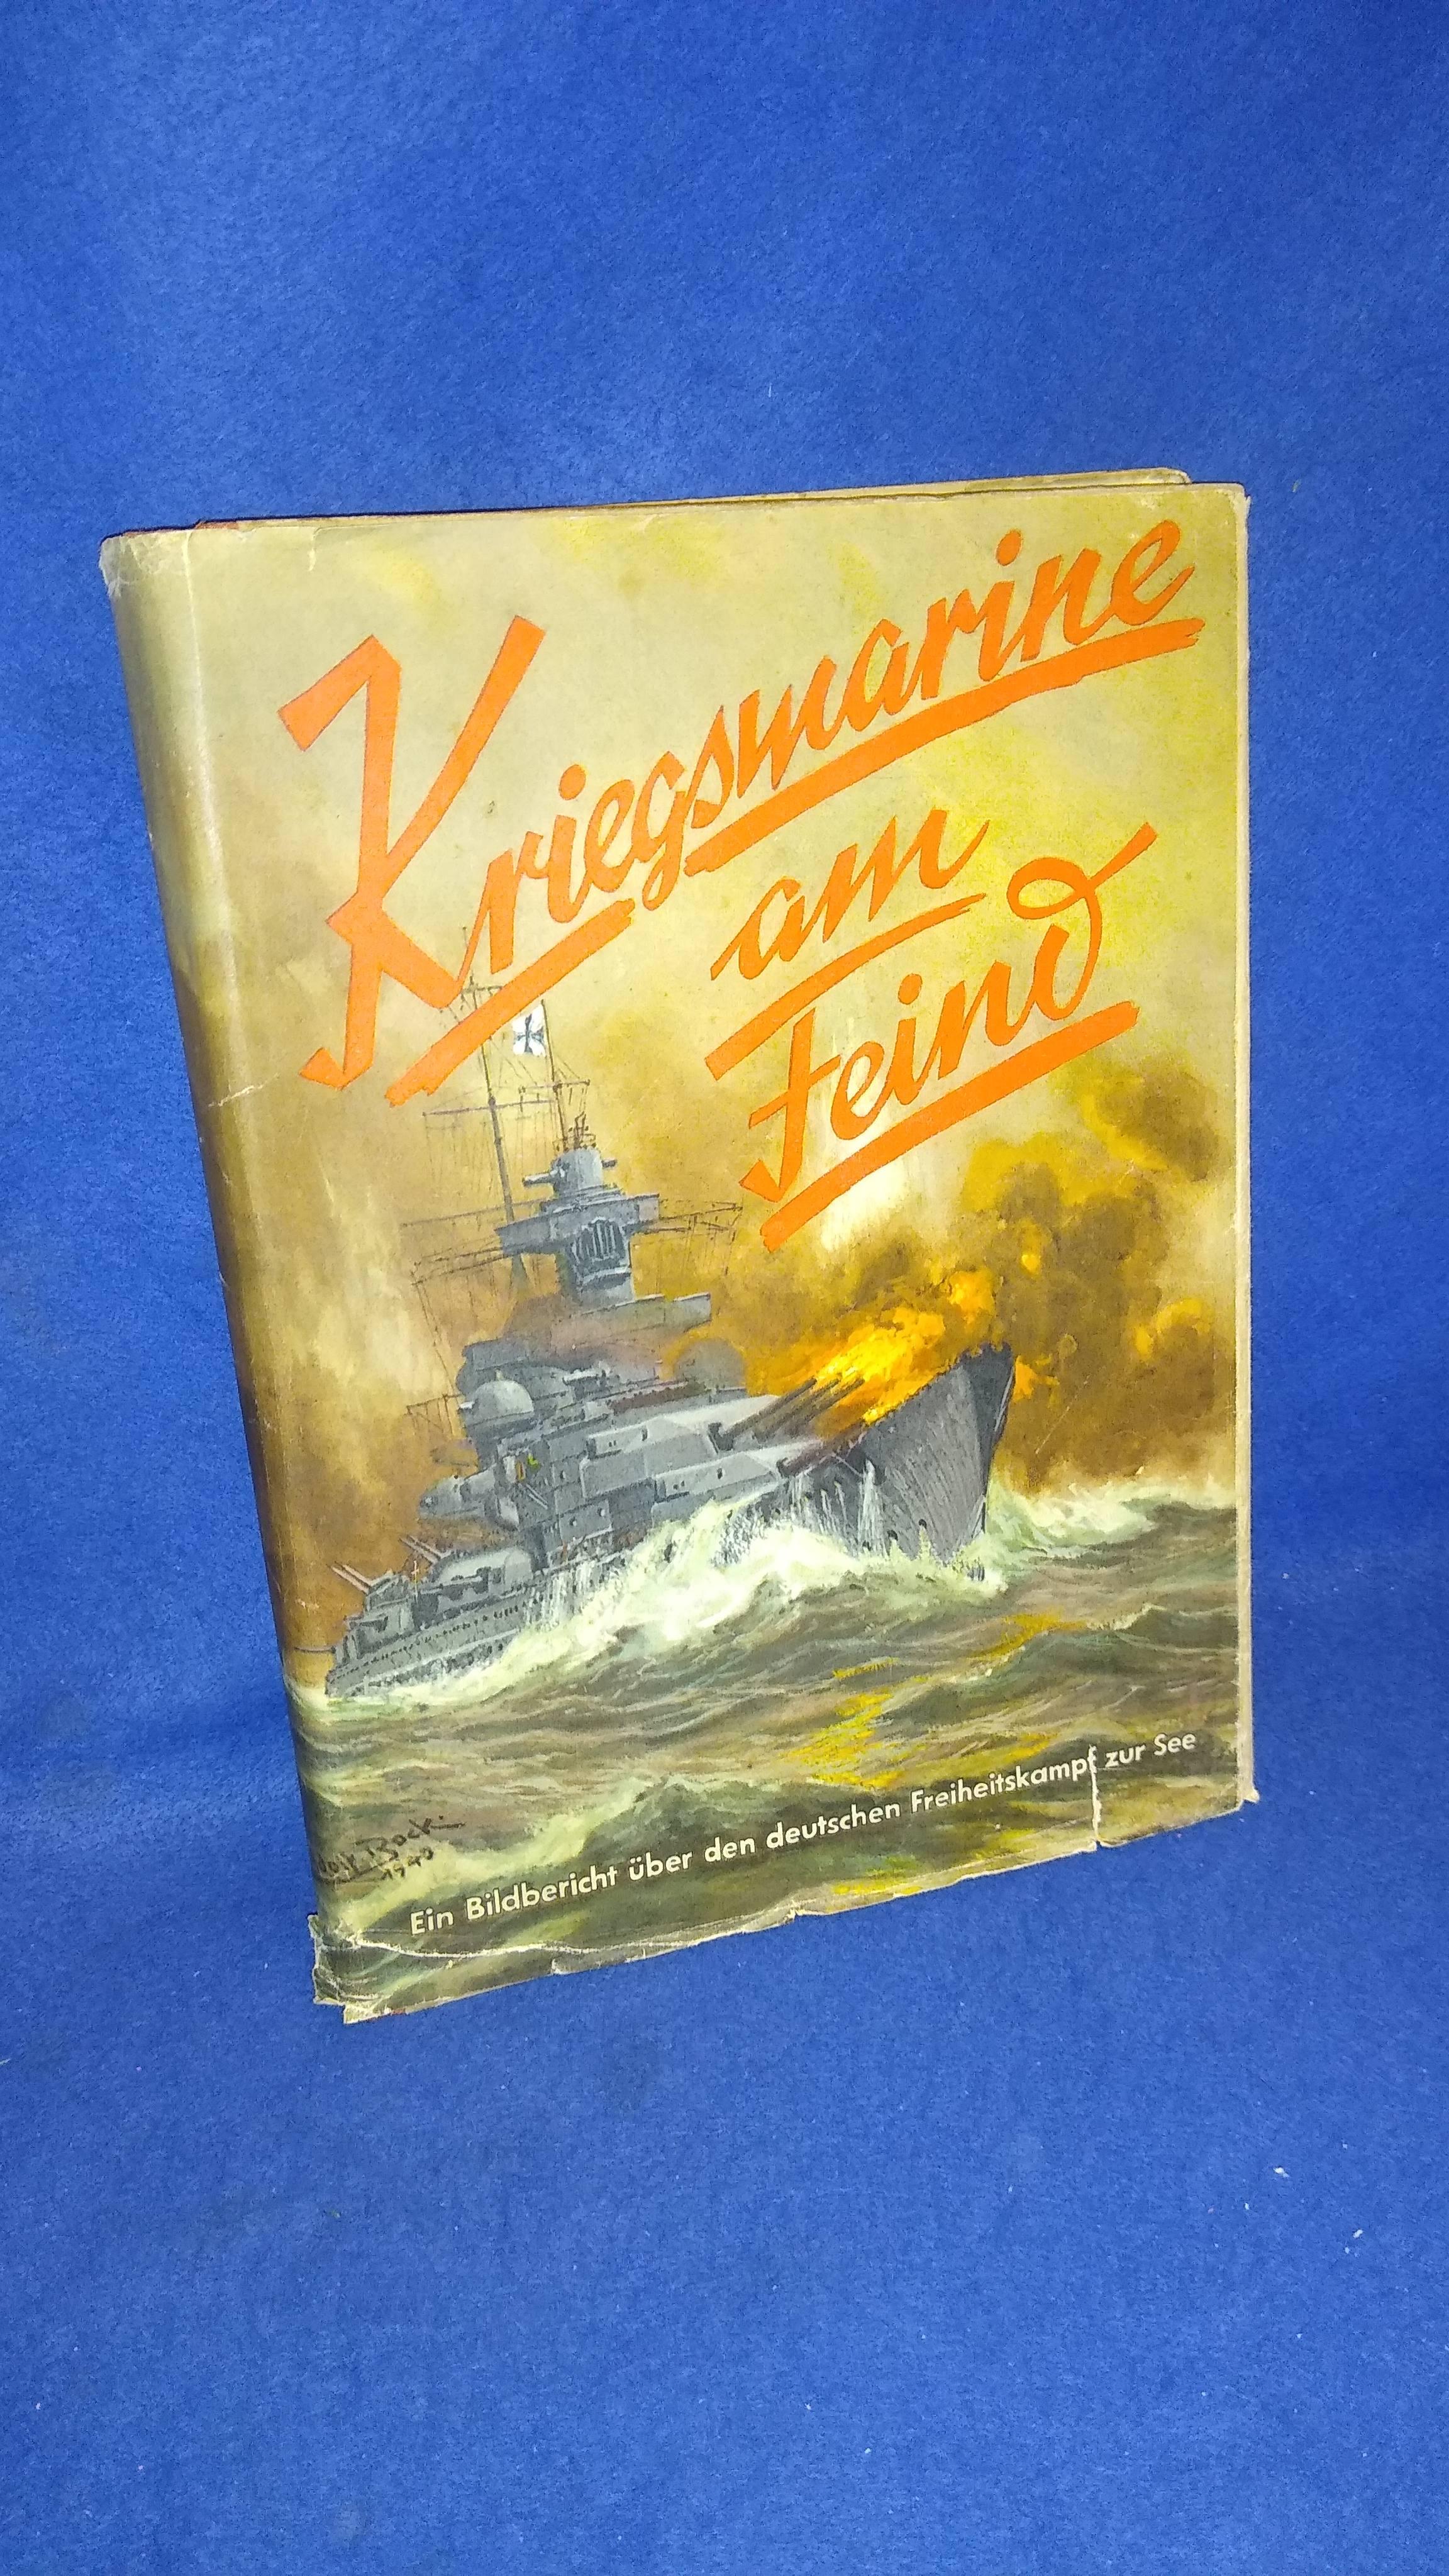 Kriegsmarine am Feind. Ein Bildbericht über den deutschen Freiheitskampf zur See.